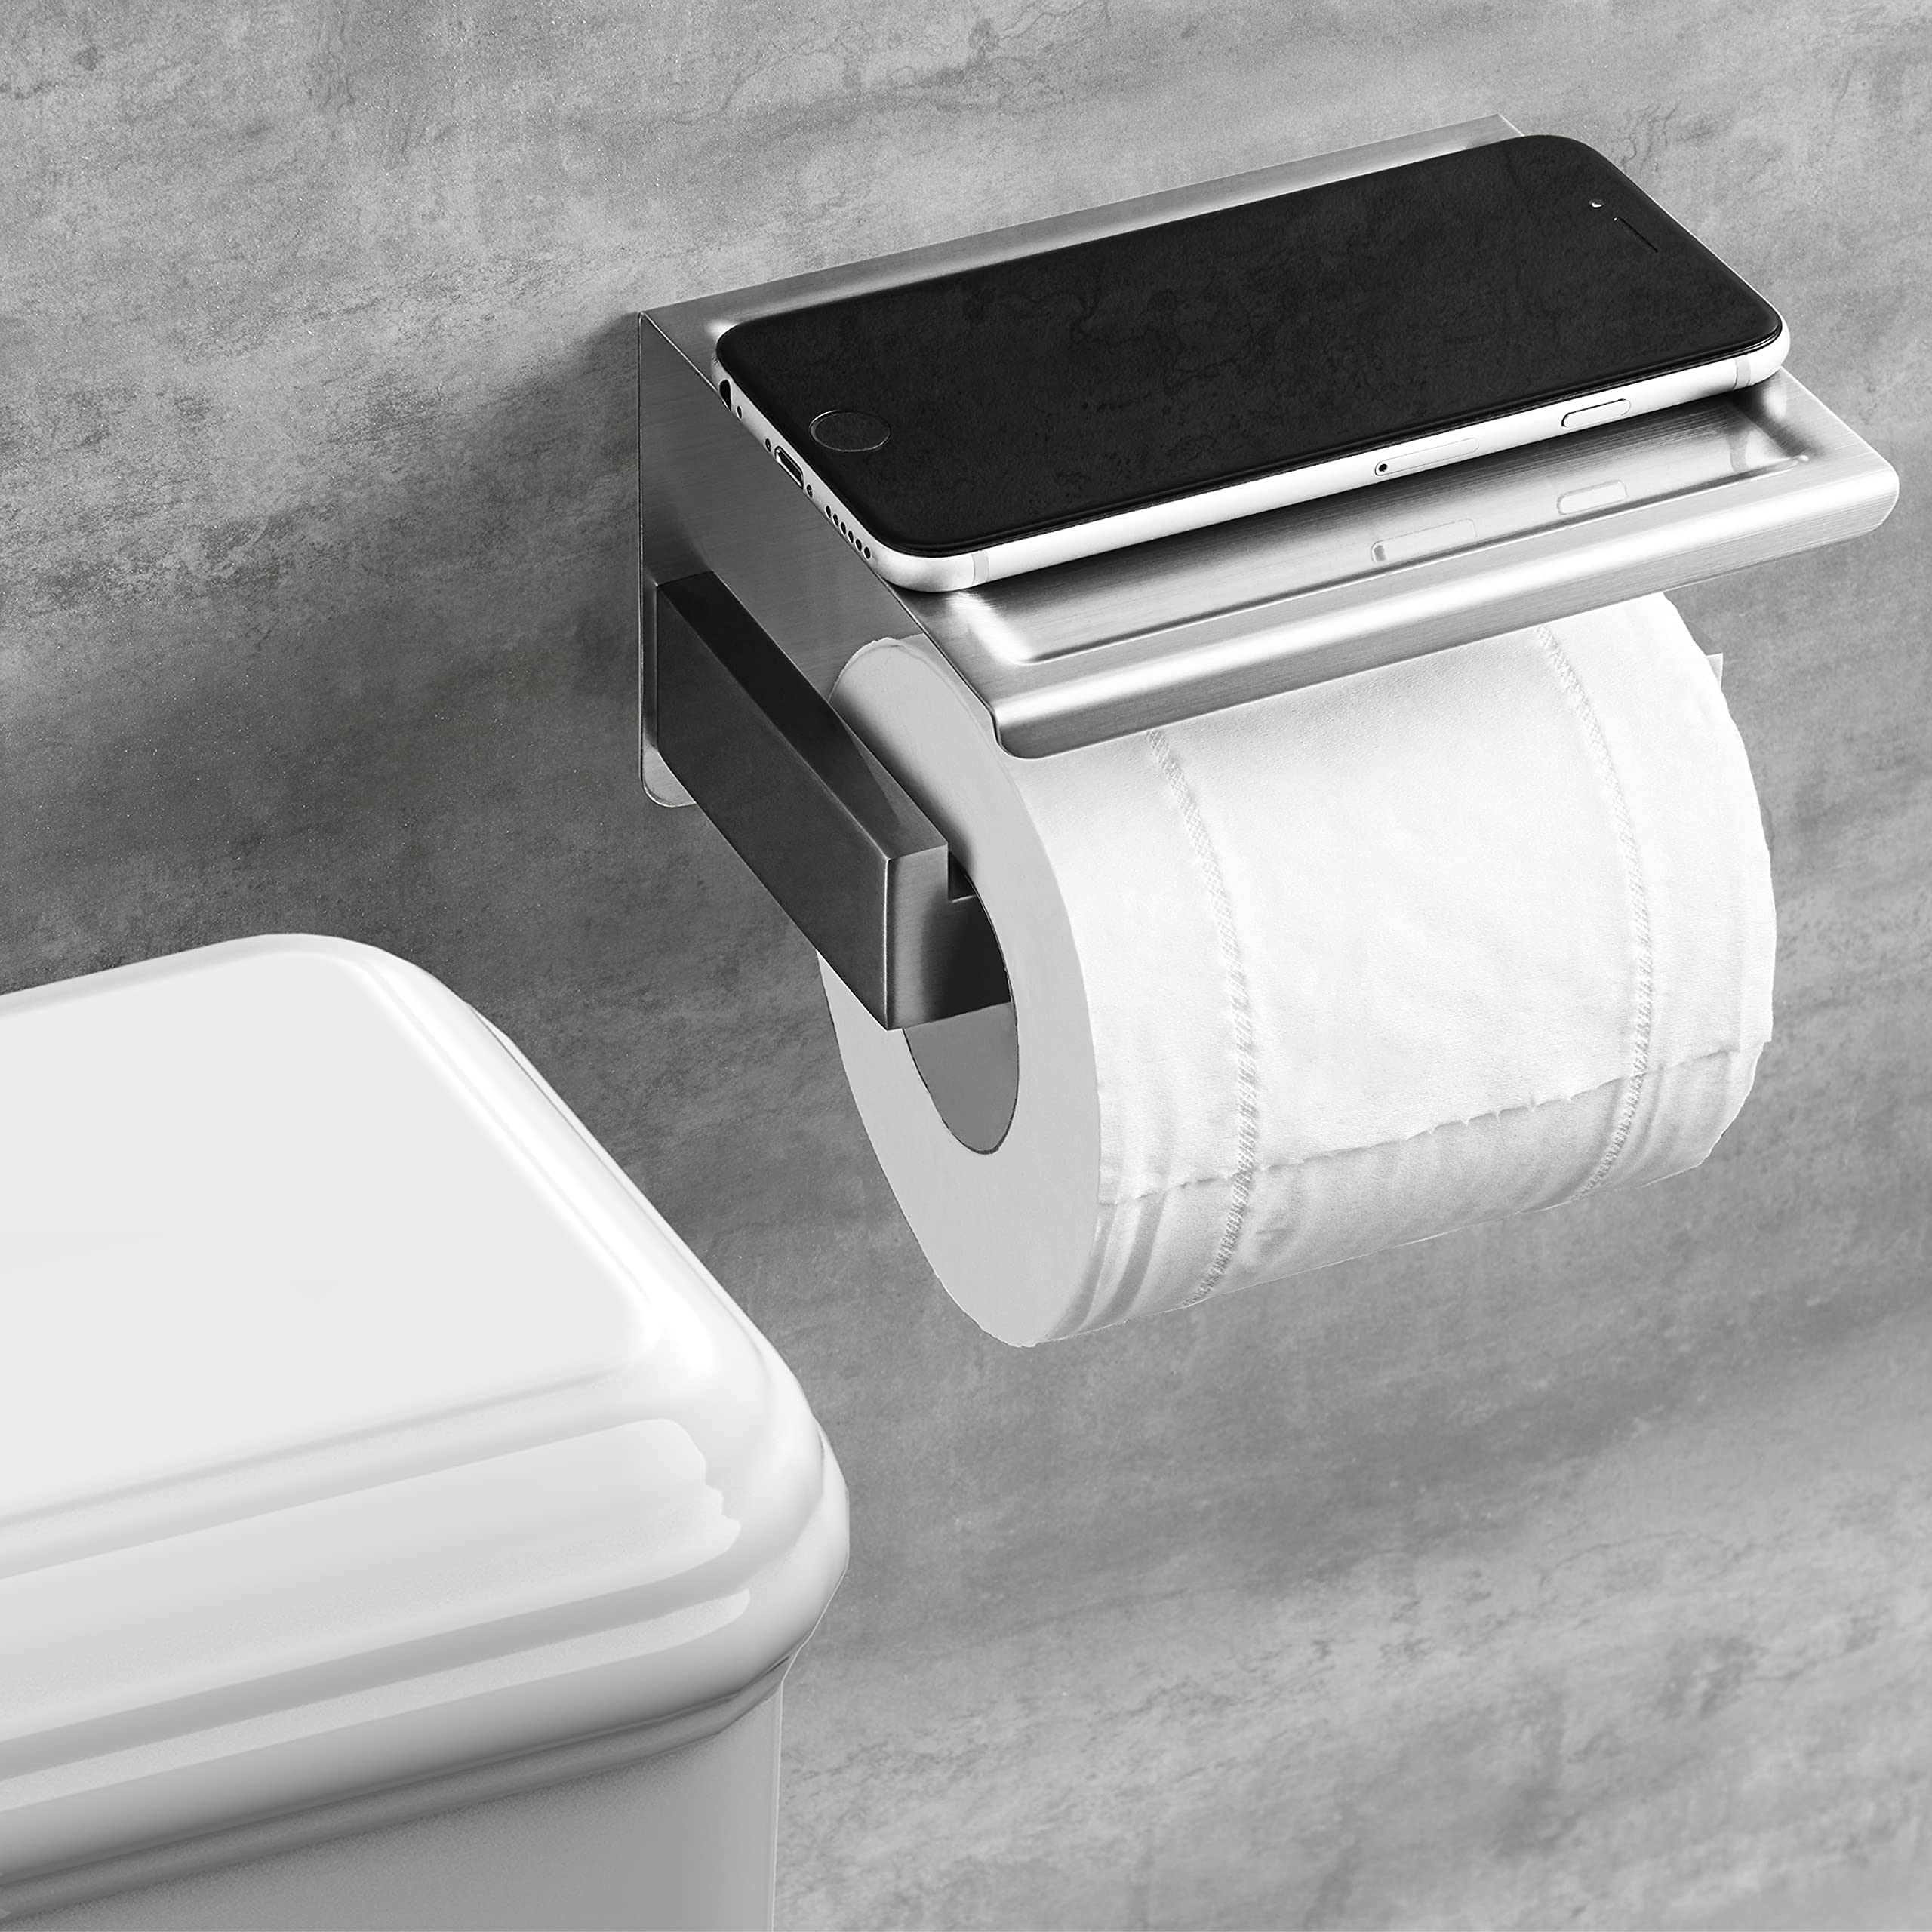 Towel Ring丨Brushed Nickel Towel Ring for Bathroom丨Modern Simple